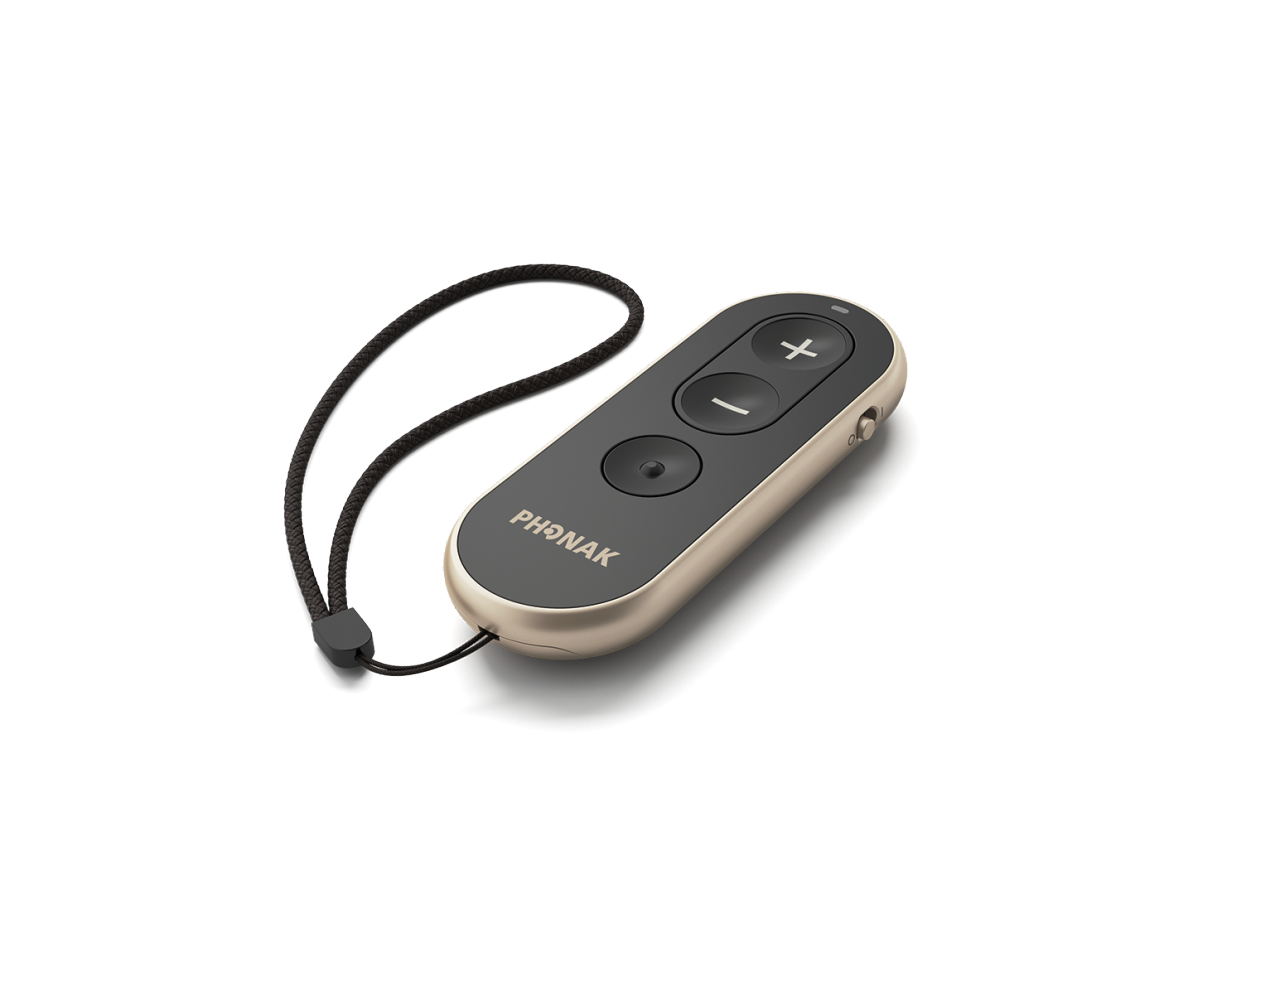 Phonak RemoteControl tilbehør til høreapparater.